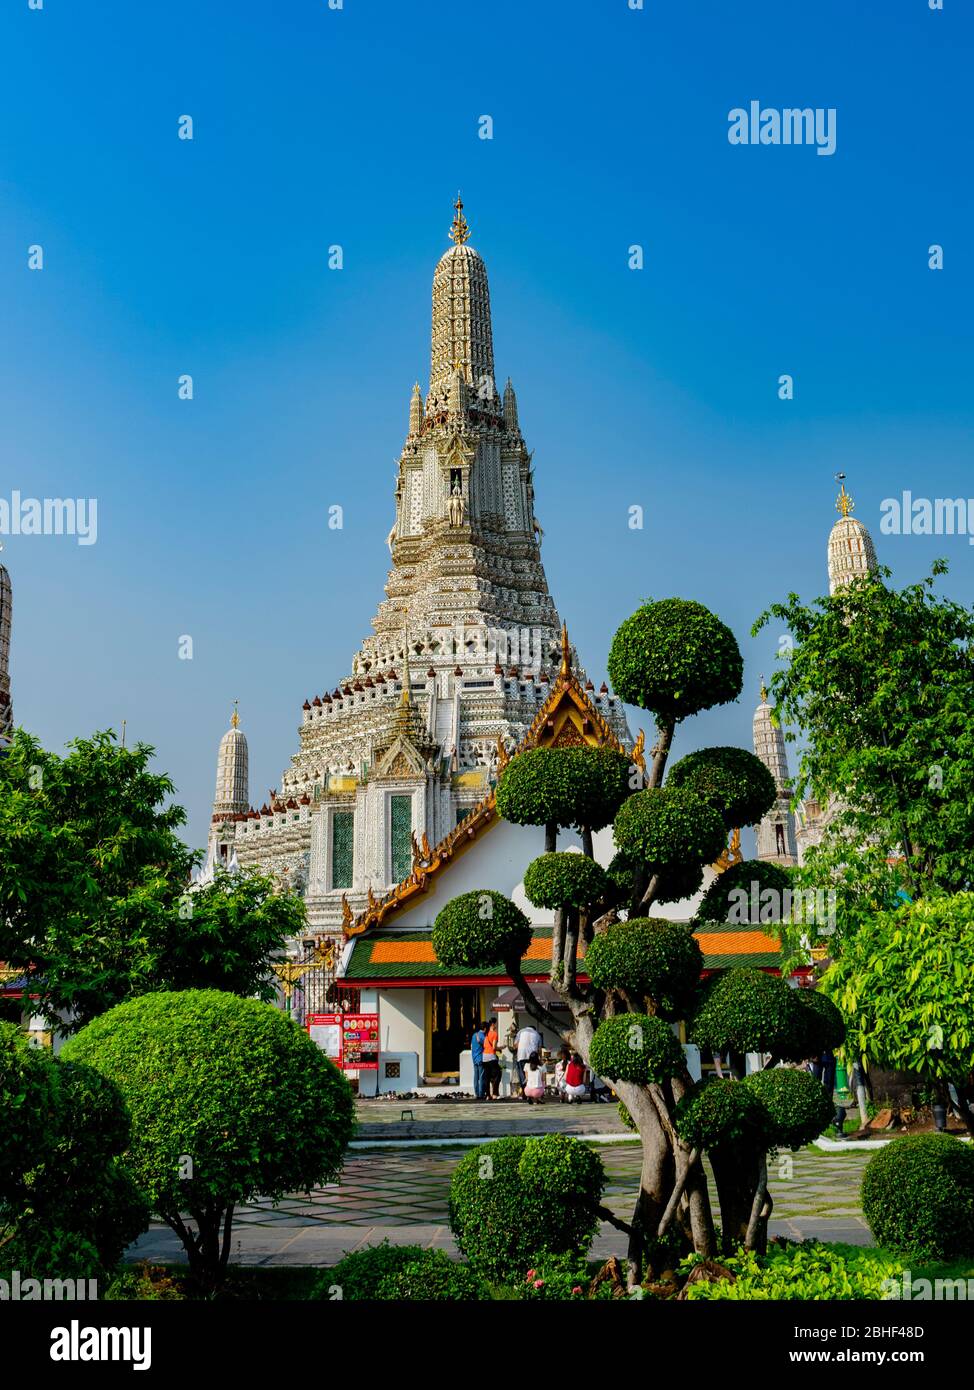 Thailandia, Bangkok - 12. januar 2019 - Wat Arun und die wunderschöne thailändische Vegetation Stockfoto